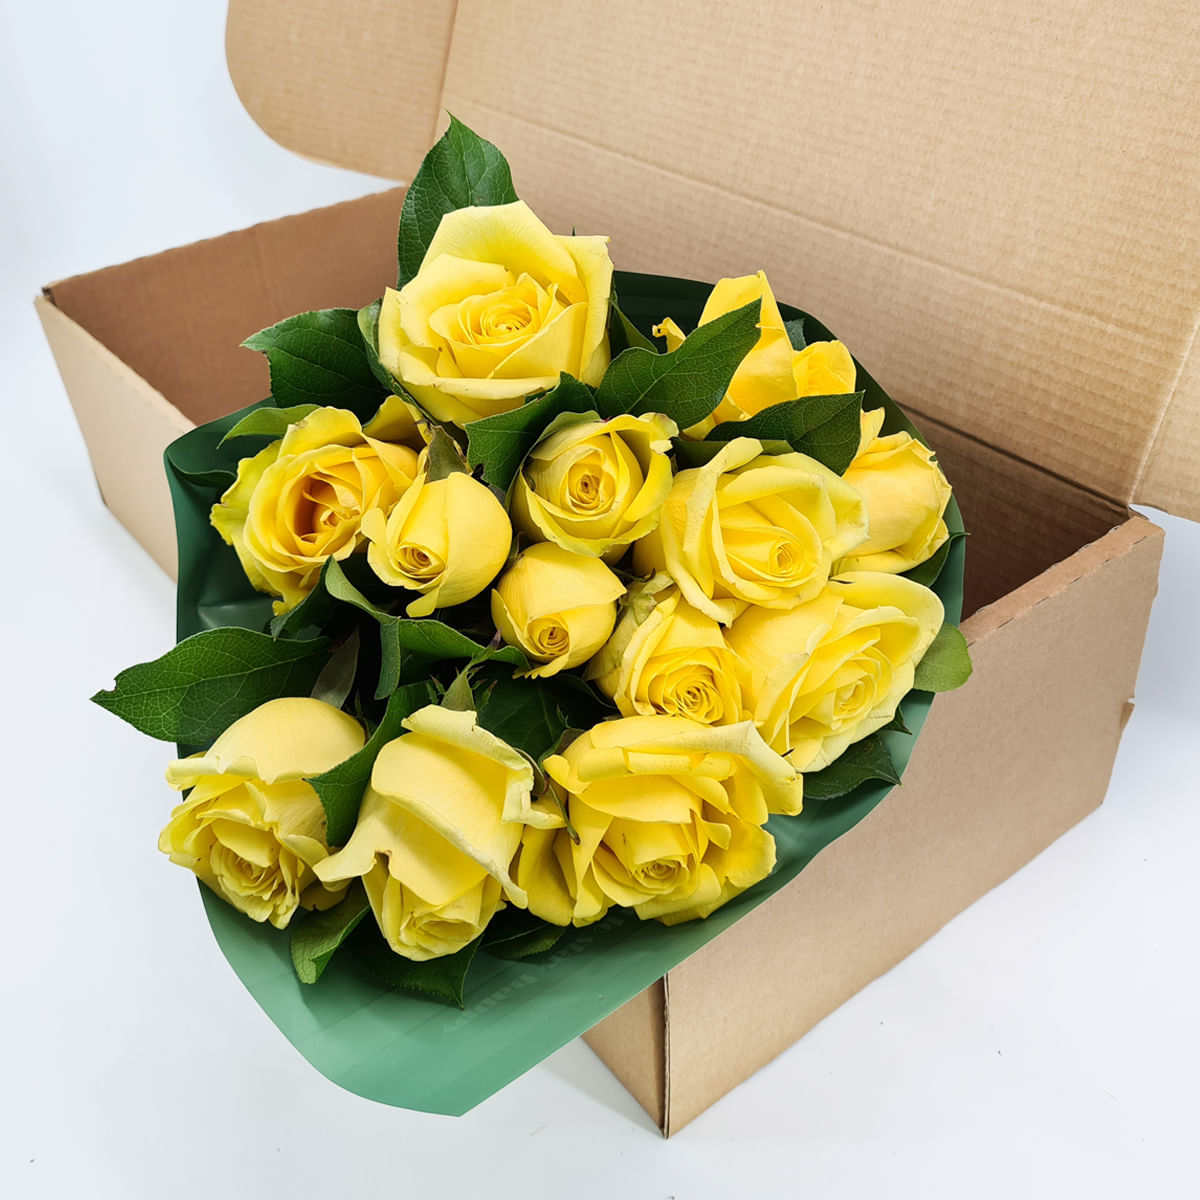 Buchet de 13 trandafiri galbeni in cutie Floria imagine 2022